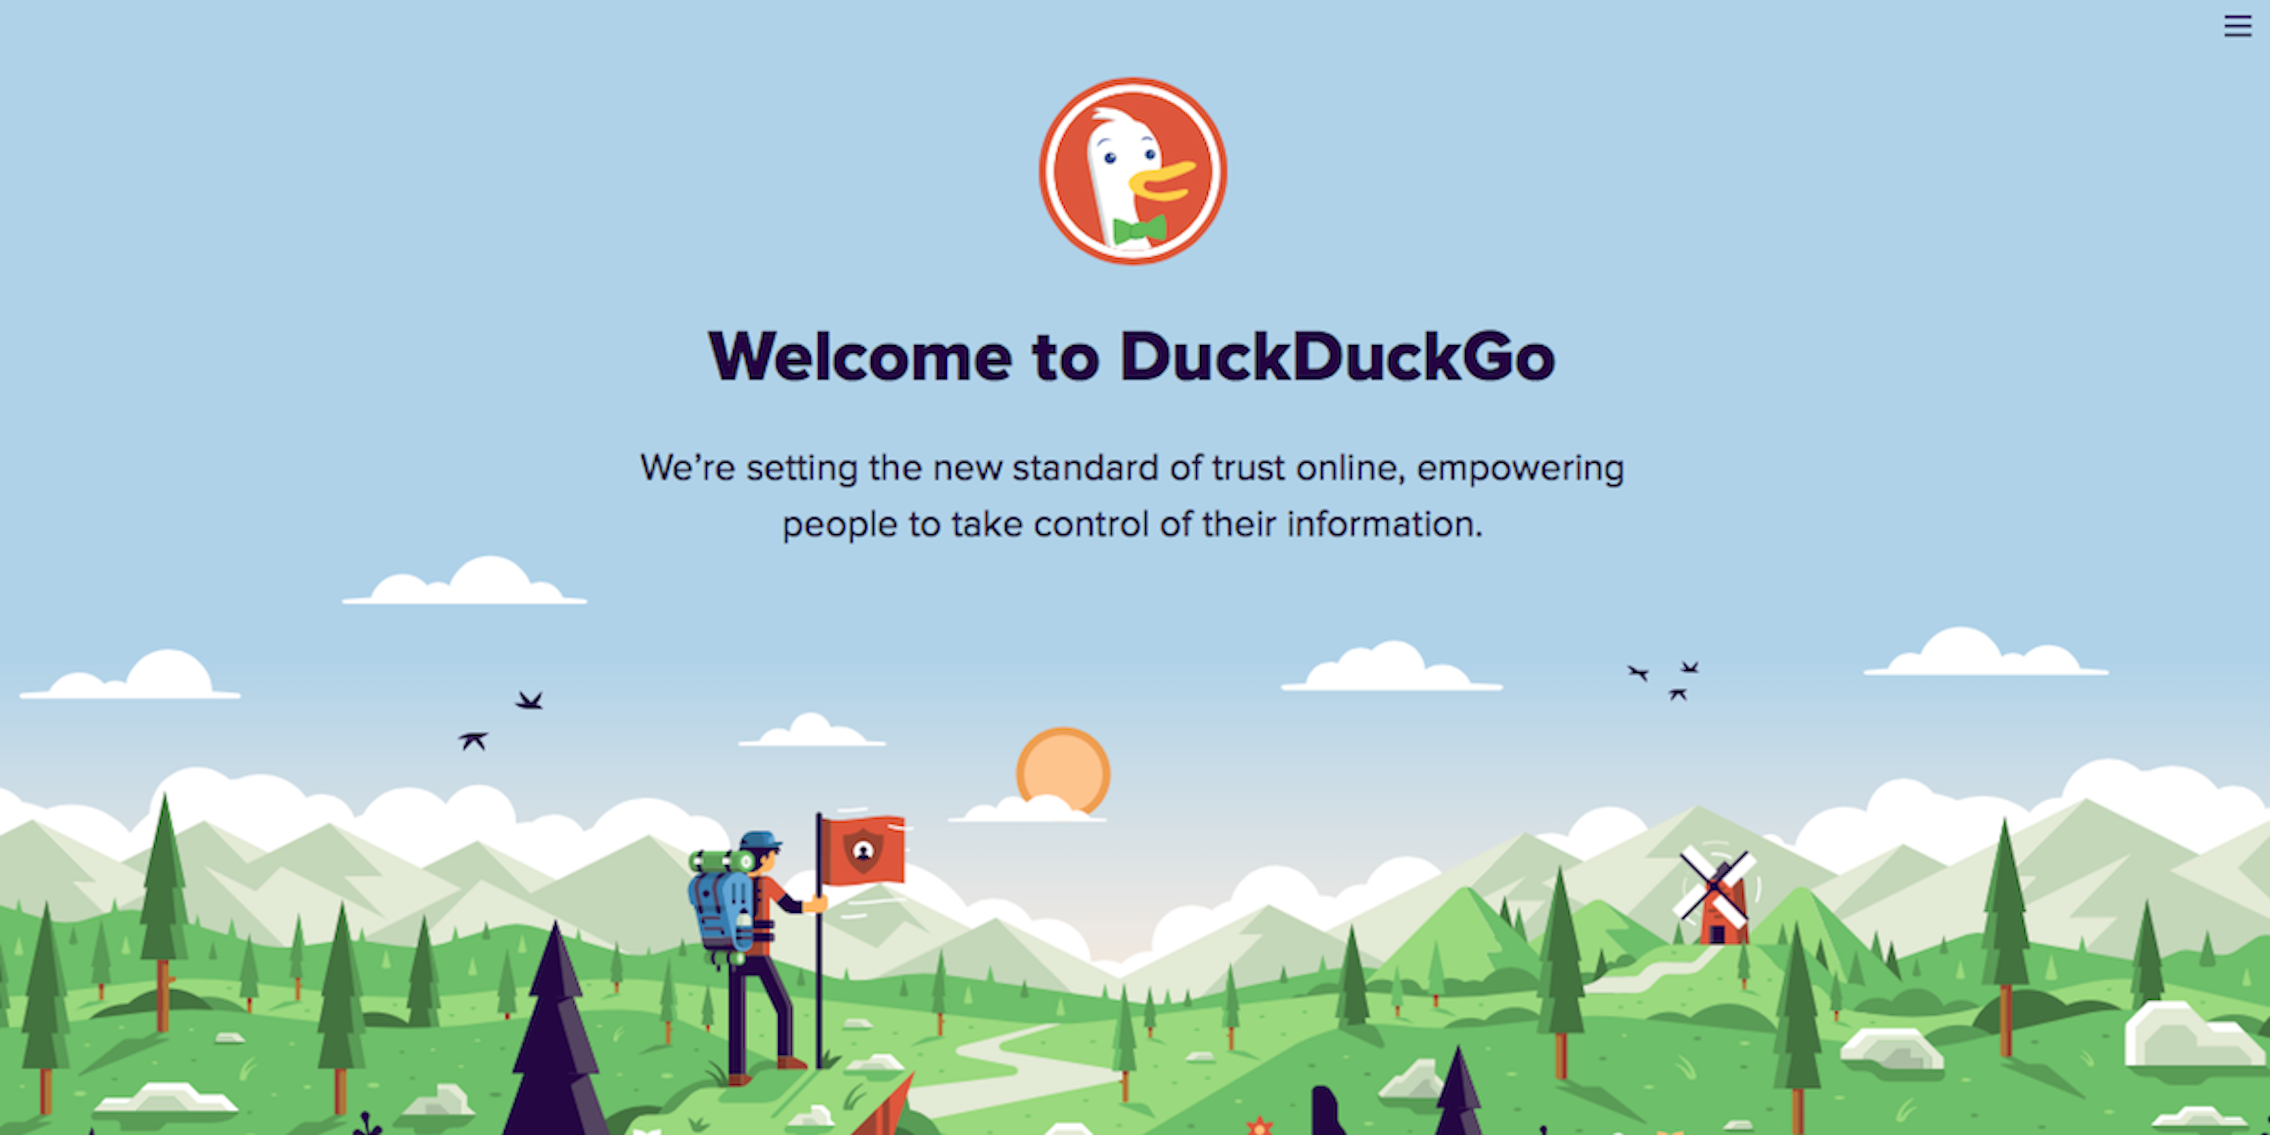 DuckDuckGo browser